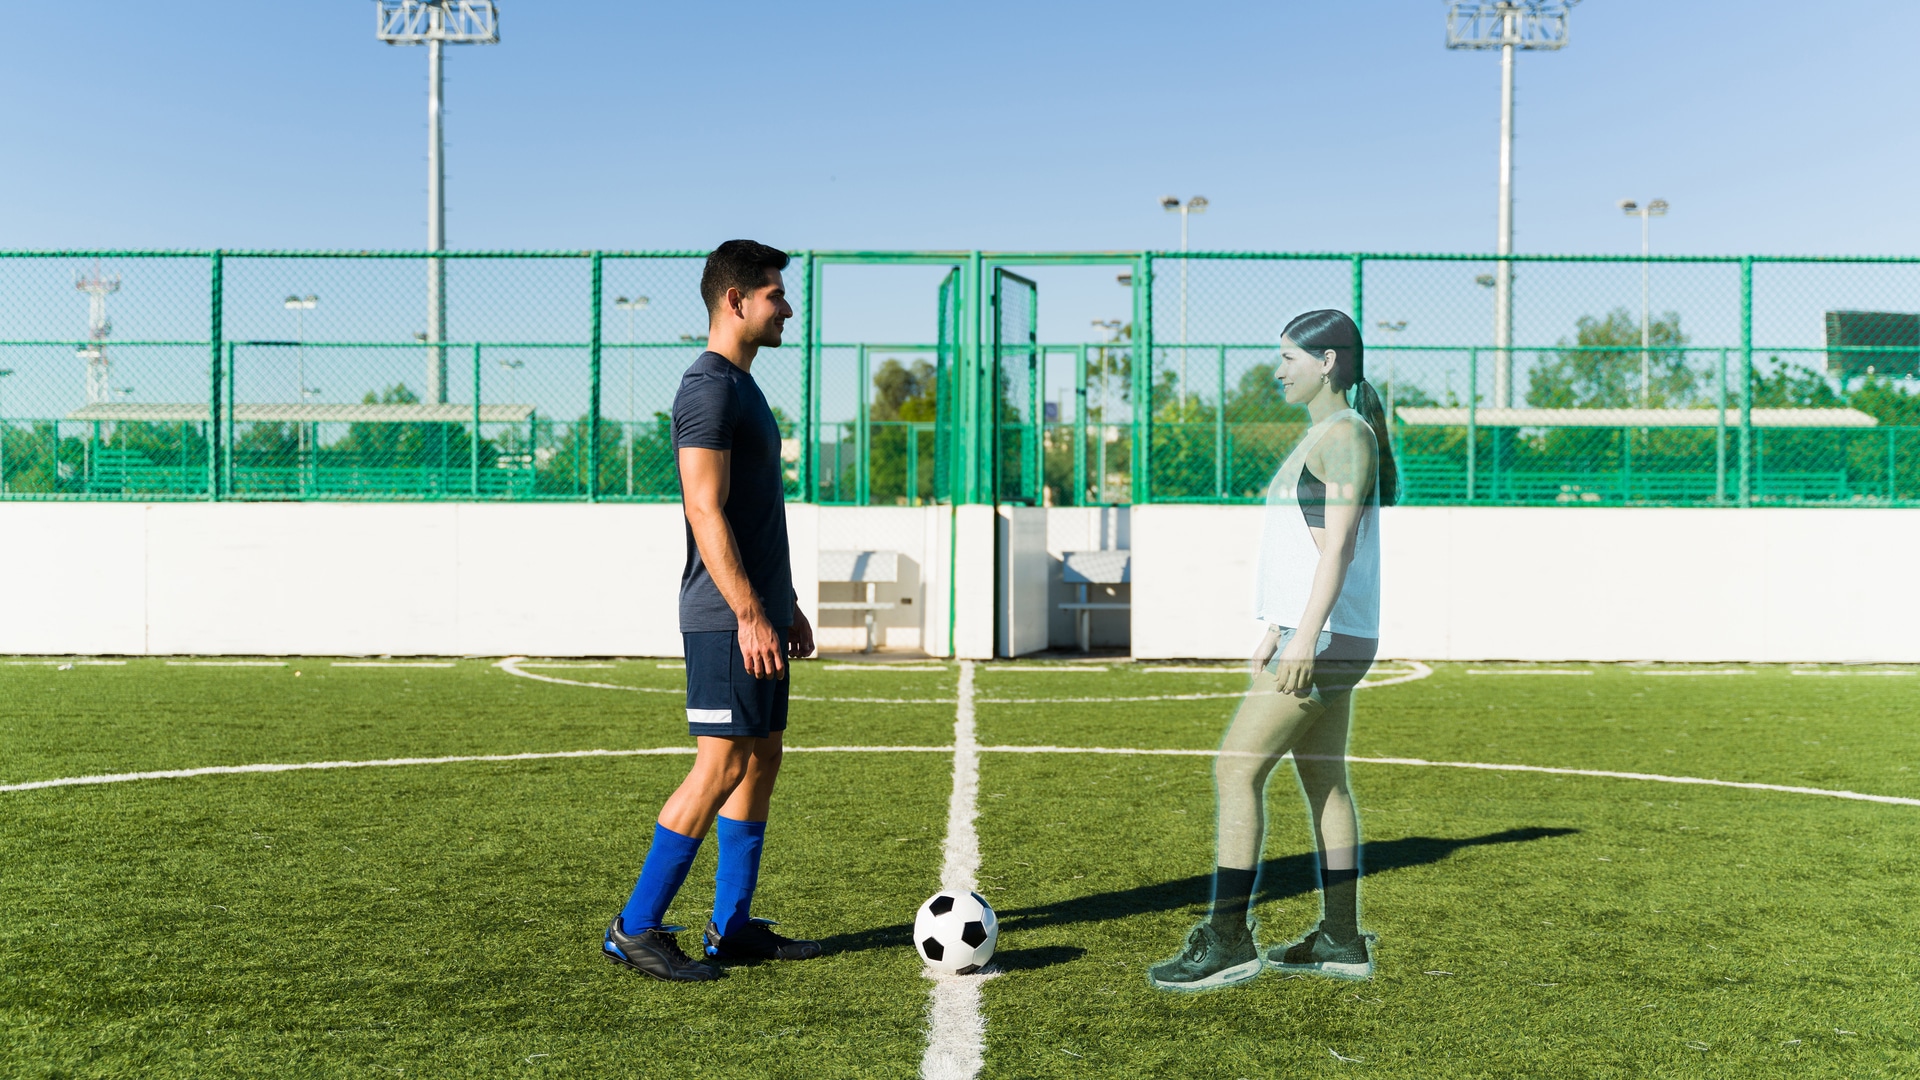 Jovem conectado ao metaverso jogando futebol com uma mulher virtual